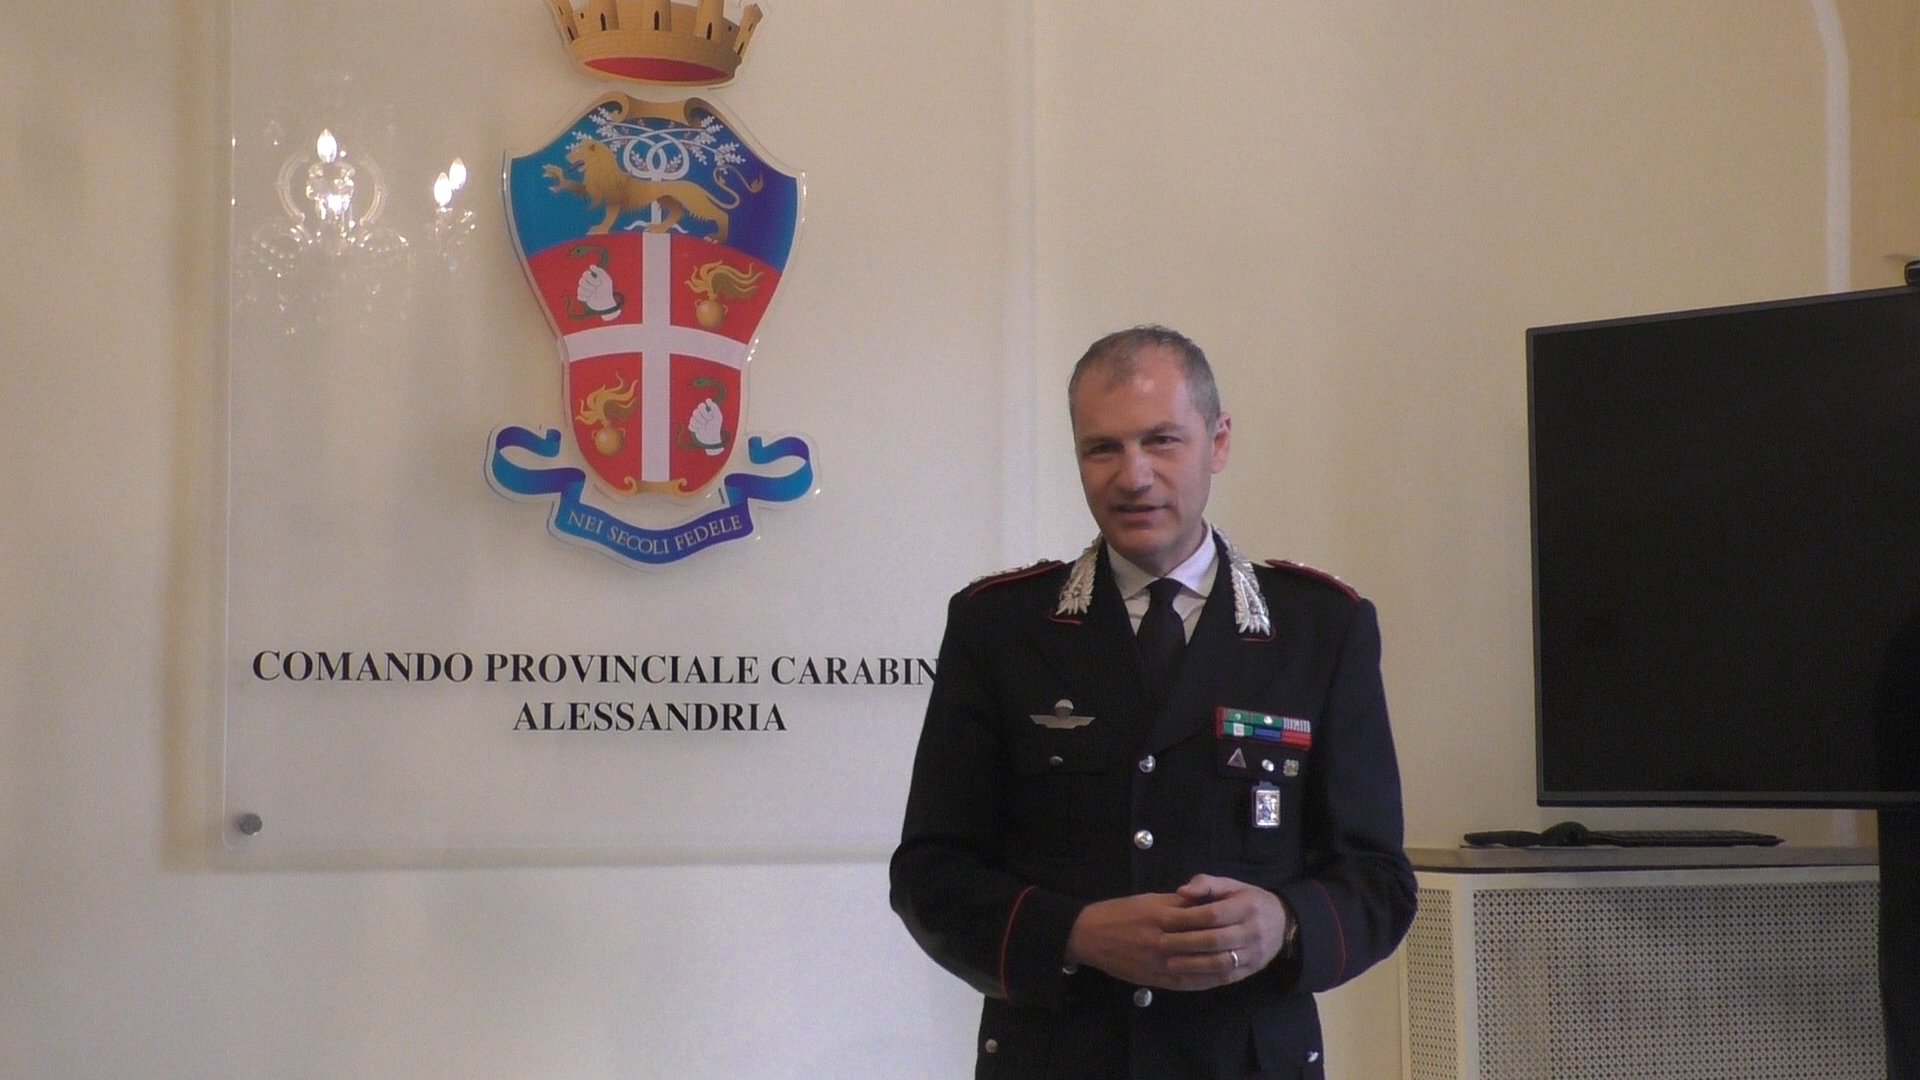 Carabinieri, il nuovo Comandante Provinciale: “Alessandria è un traguardo prestigiosissimo”